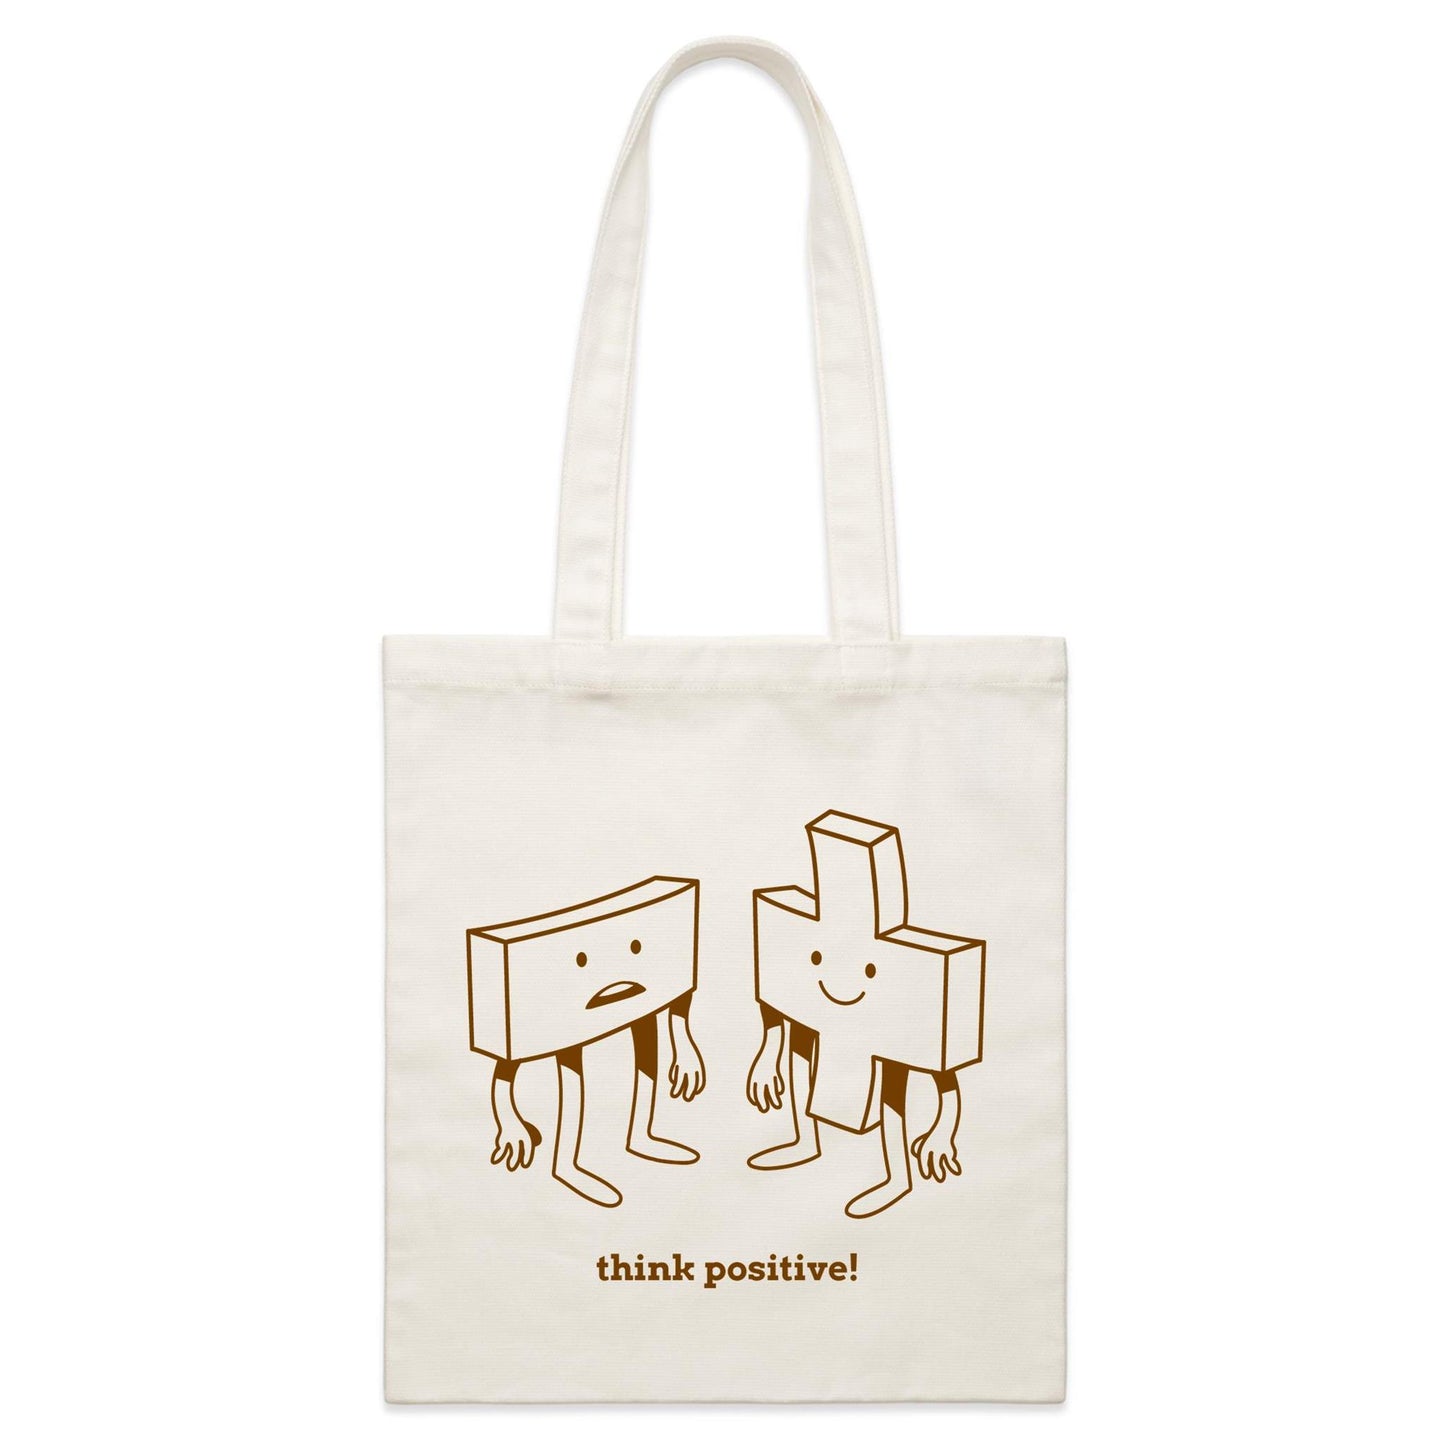 Think Positive, Plus And Minus - Parcel Canvas Tote Bag Default Title Parcel Tote Bag Maths Motivation